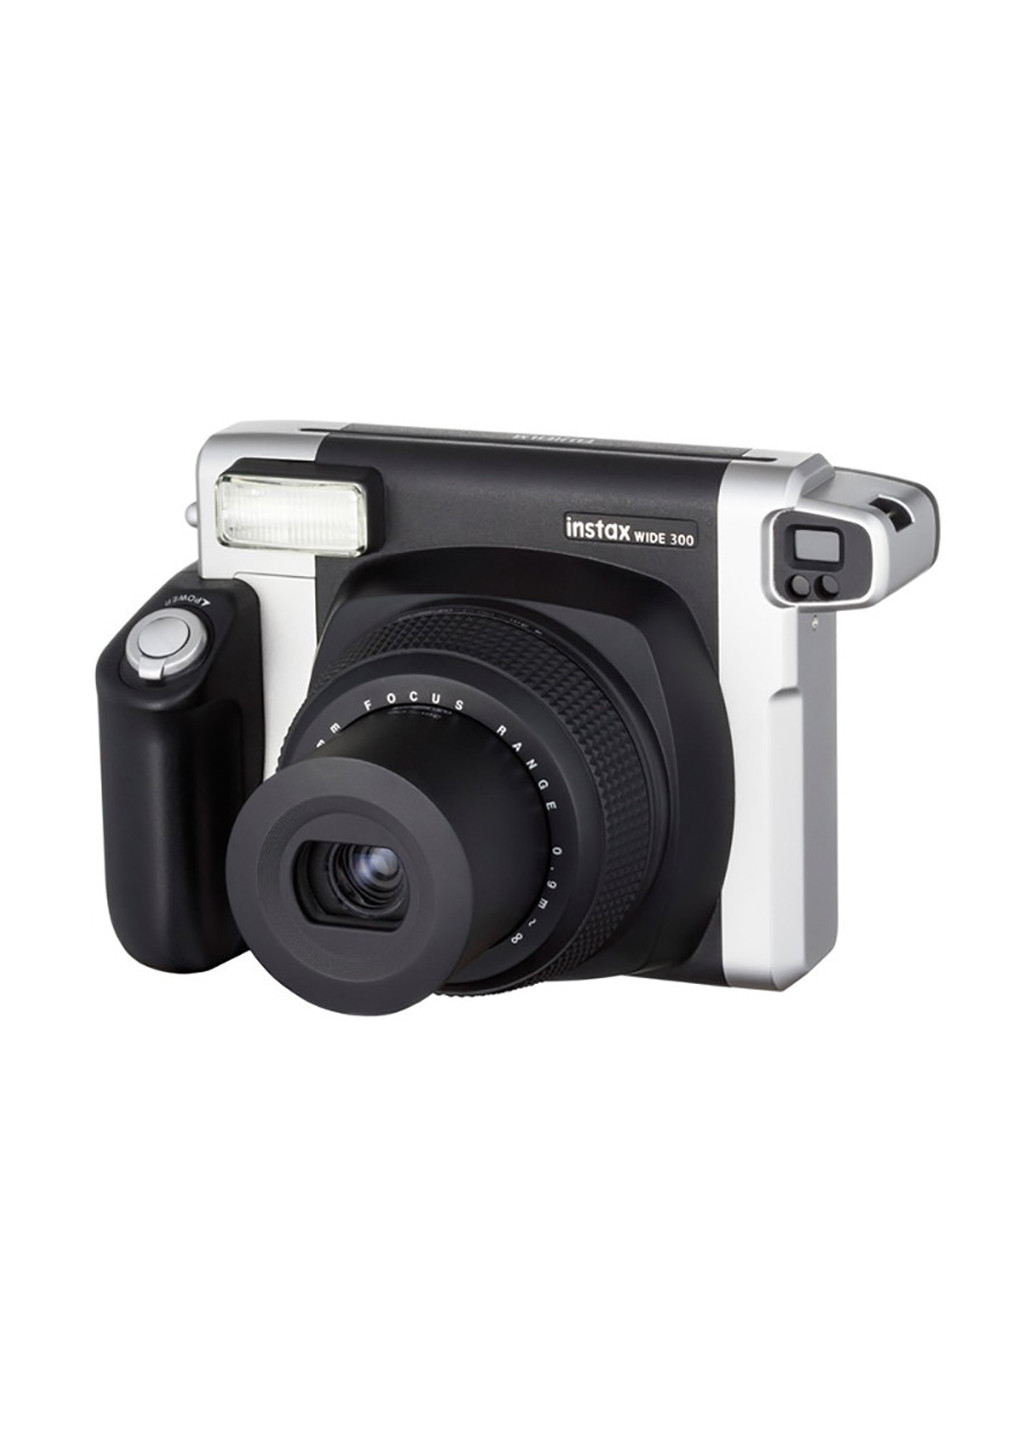 Фотокамера миттєвого друку INSTAX 300 Fujifilm моментальной печати instax 300 (151241167)